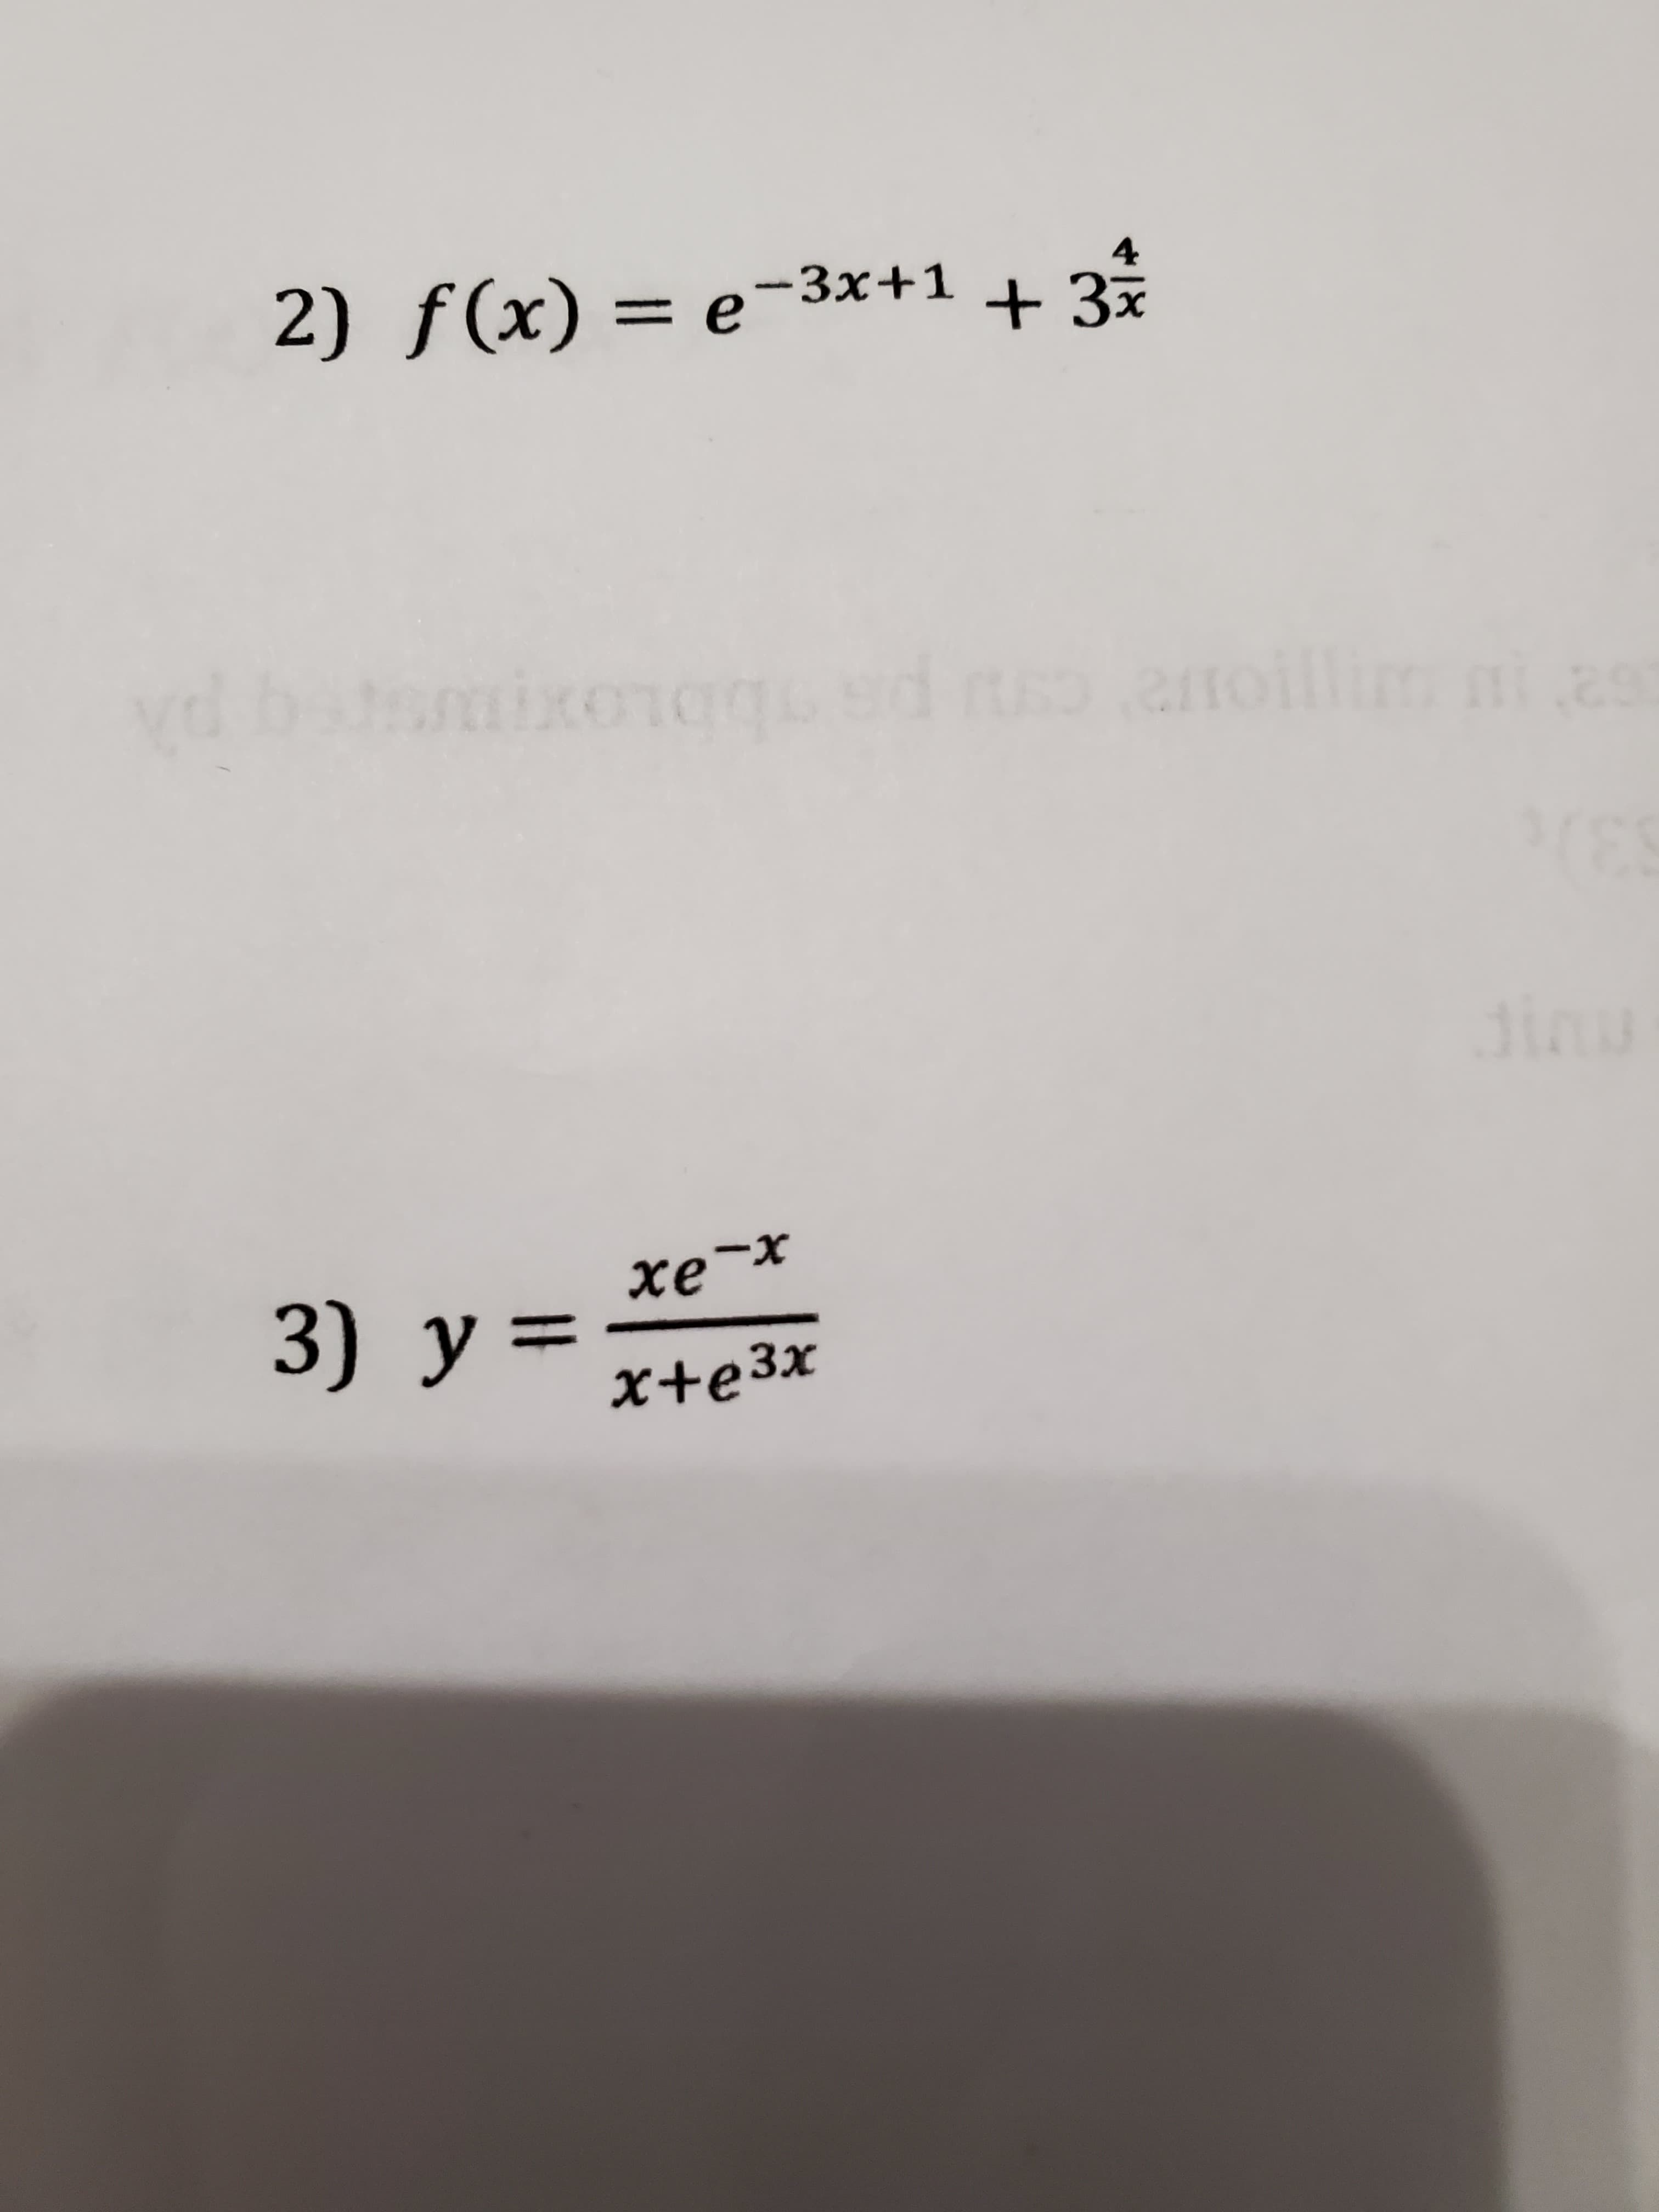 2) f(x) = e-3x+1 + 3%
4
dinu
x-
3) y=
%3D
x+e3x
